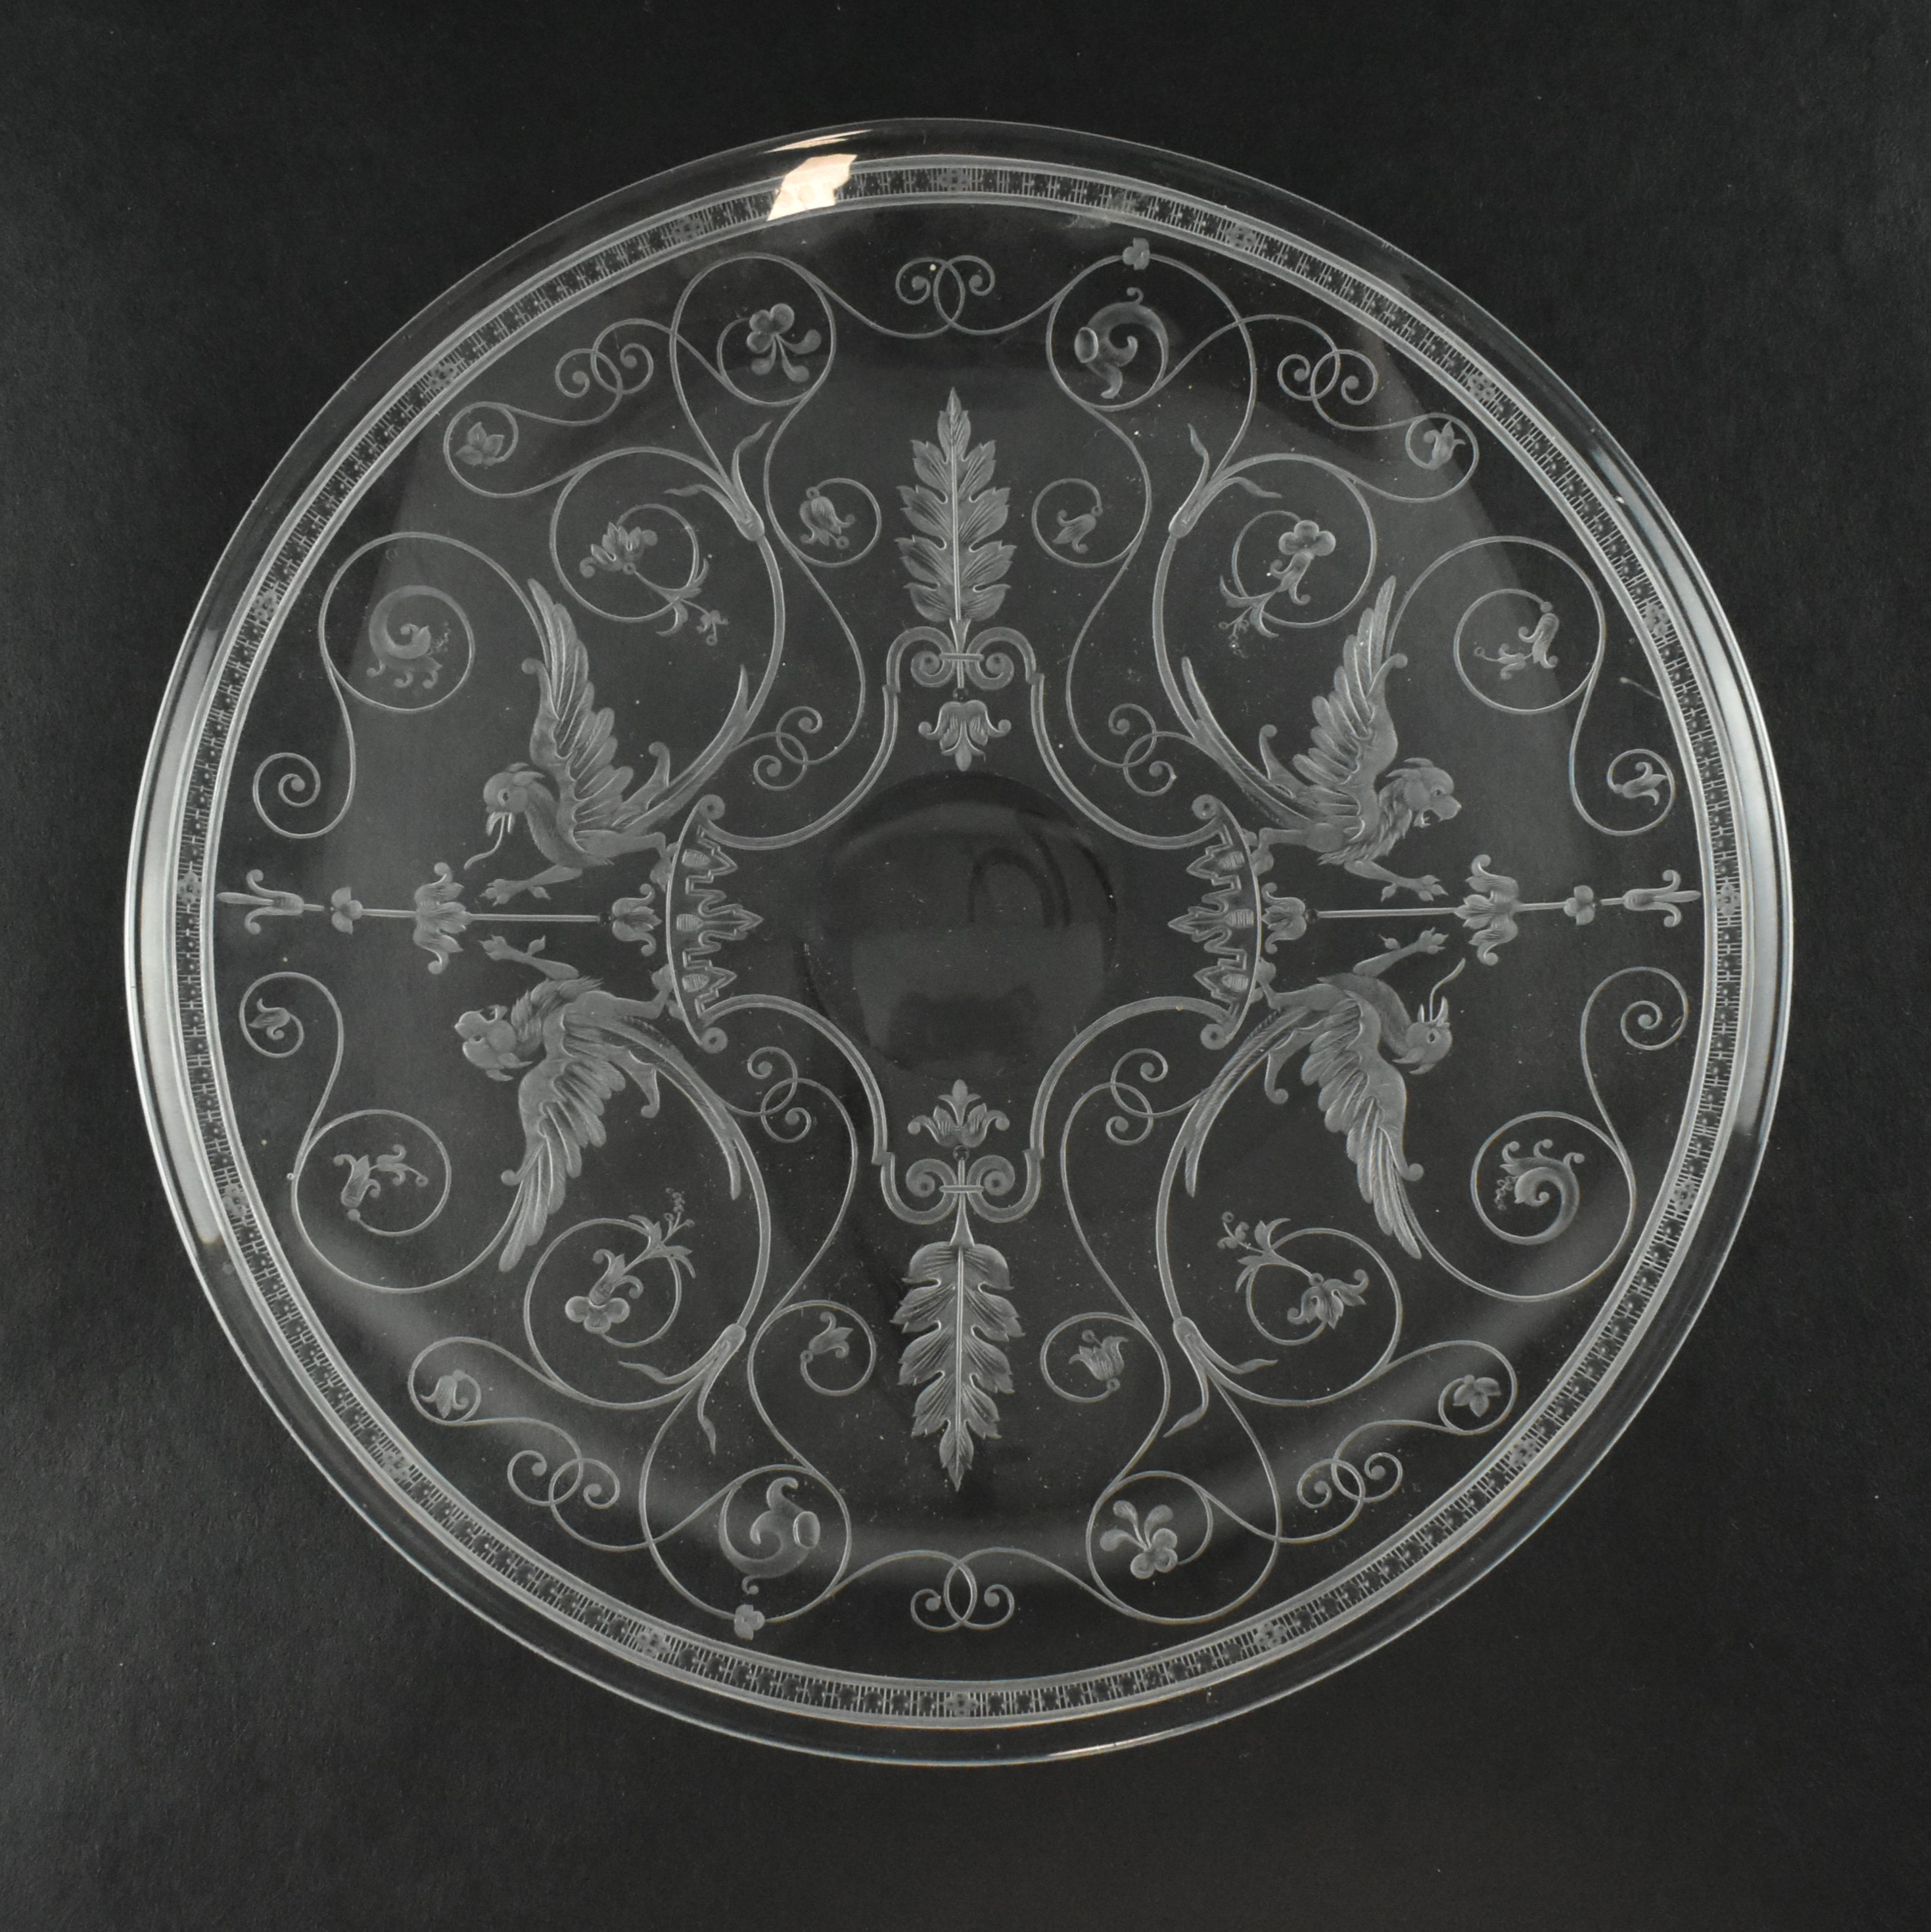 CIRCA 1860 STOURBRIDGE ENGRAVED GLASS PLATE